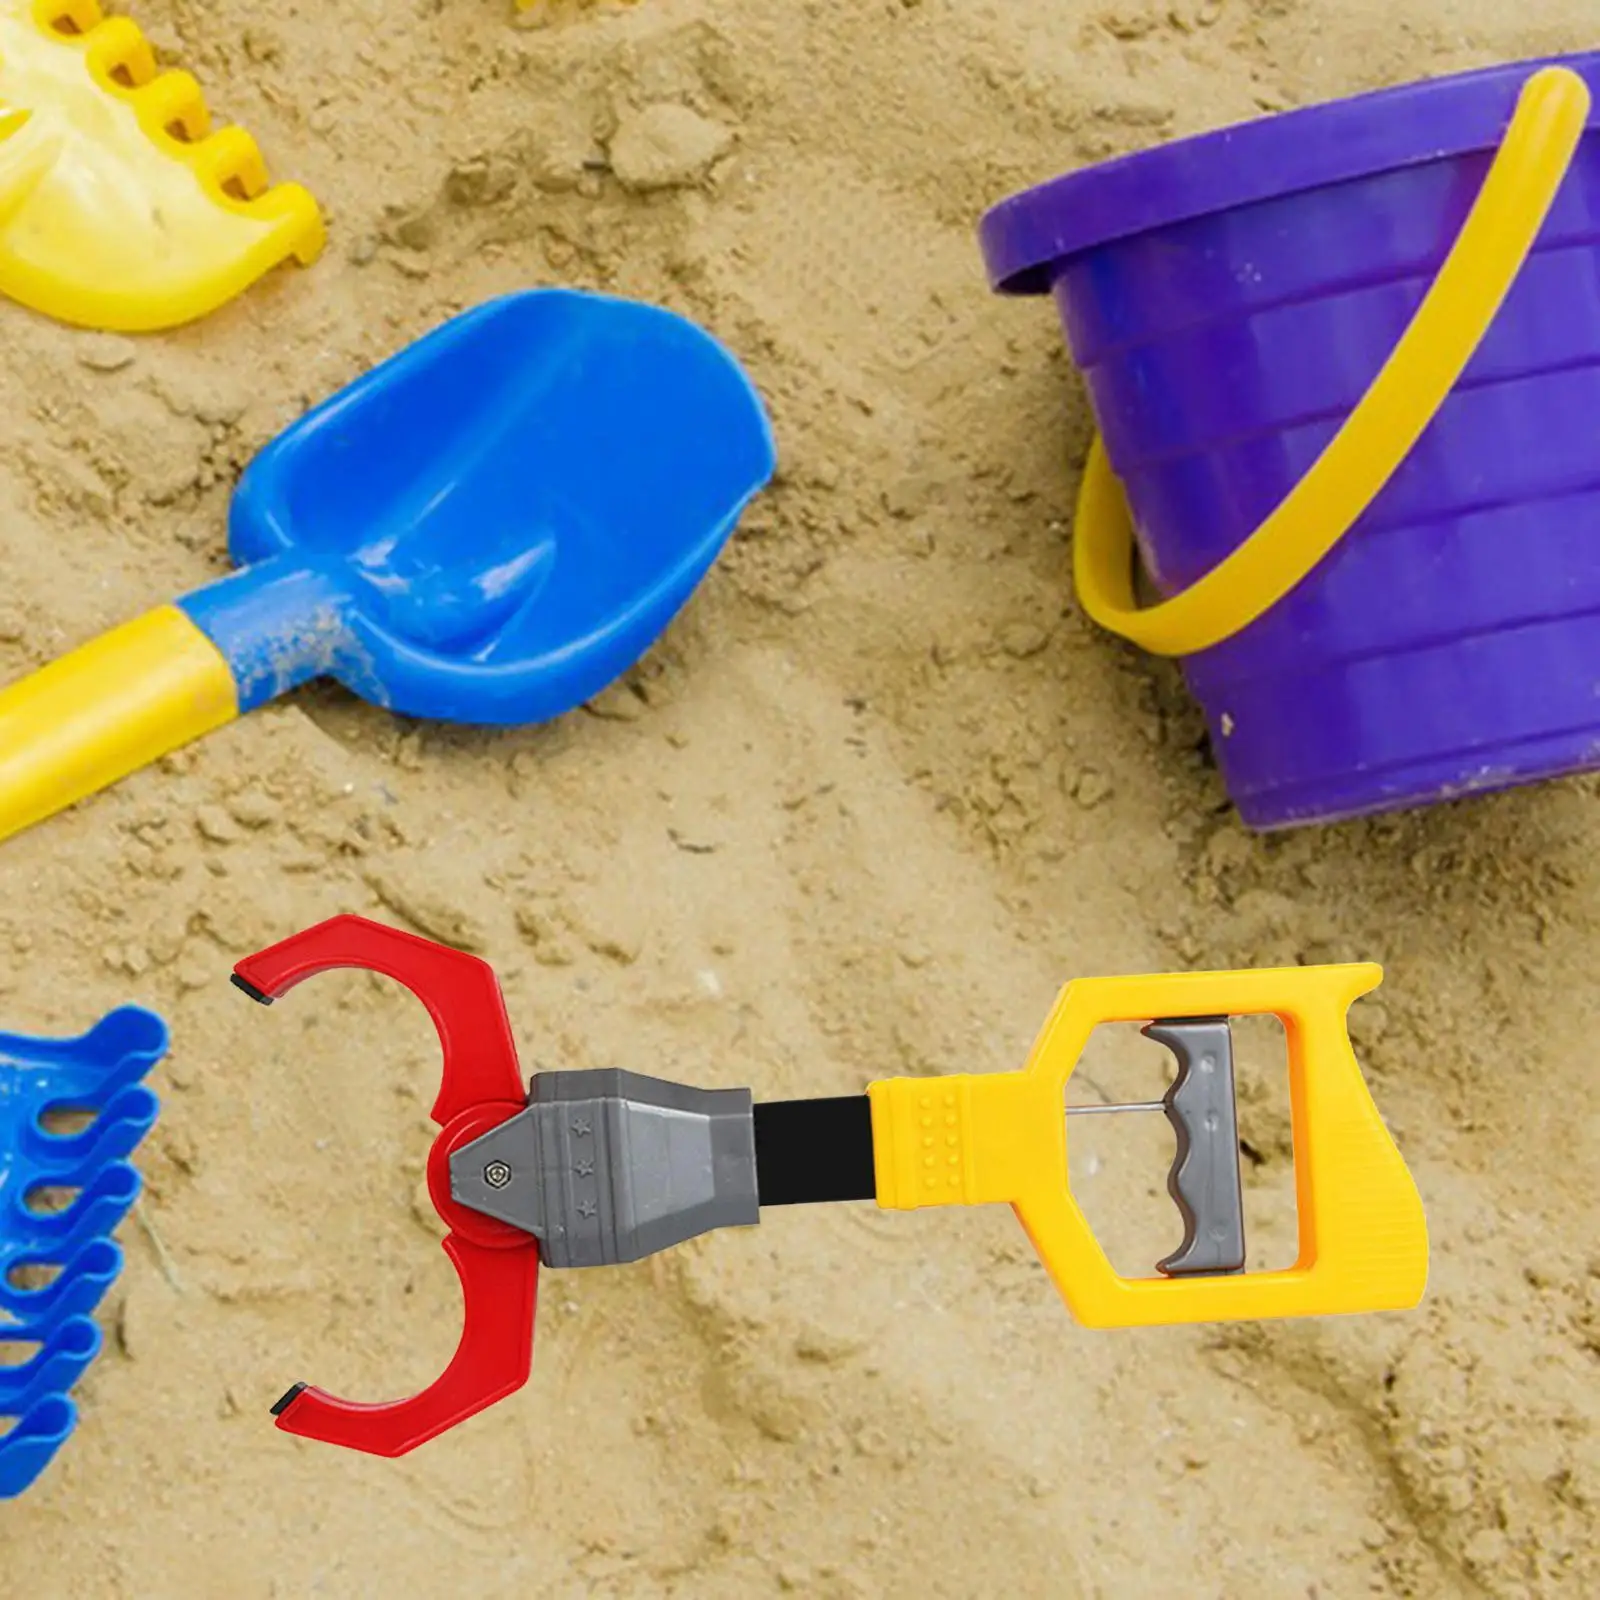 Interactive Toy Grabber Robot Hand Claw Beach Accessories Gripper Trash Picker Trash Picking Toy for Girls Children Beach Toy